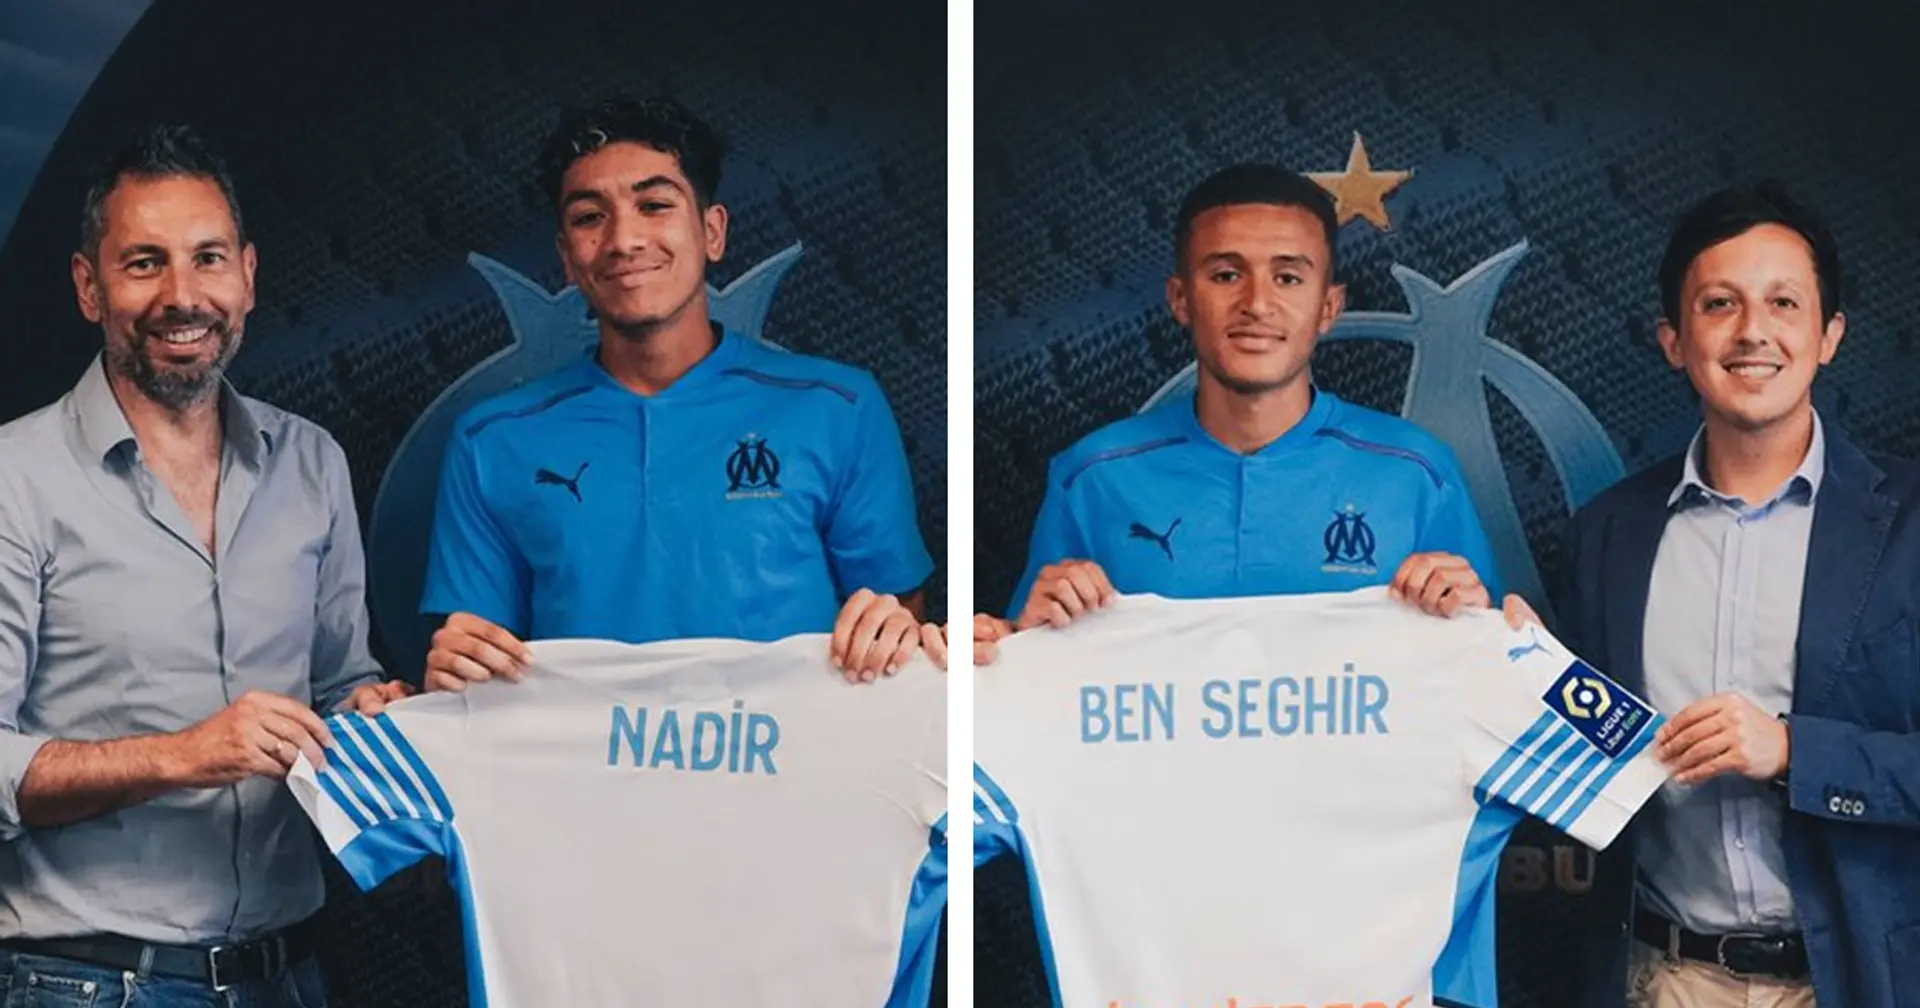 OFFICIEL : L'OM annonce l'arrivée de deux jeunes joueurs Bilal Nadir et Salim Ben Seghir